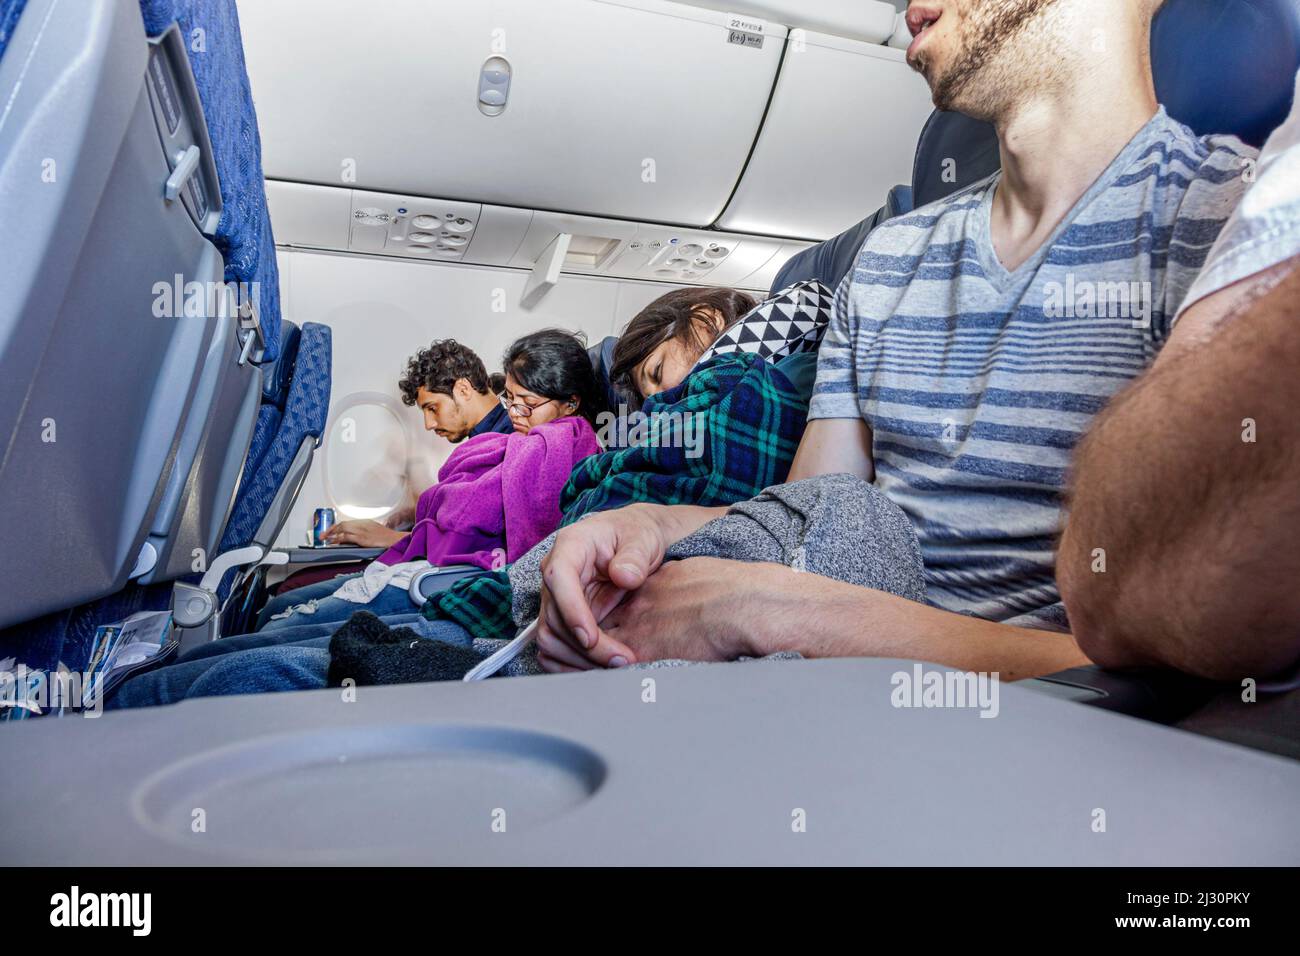 Miami Florida,American Airlines,volo aereo aereo commerciale passeggeri classe economica sedili fila uomini donne dormire napping a bordo Foto Stock